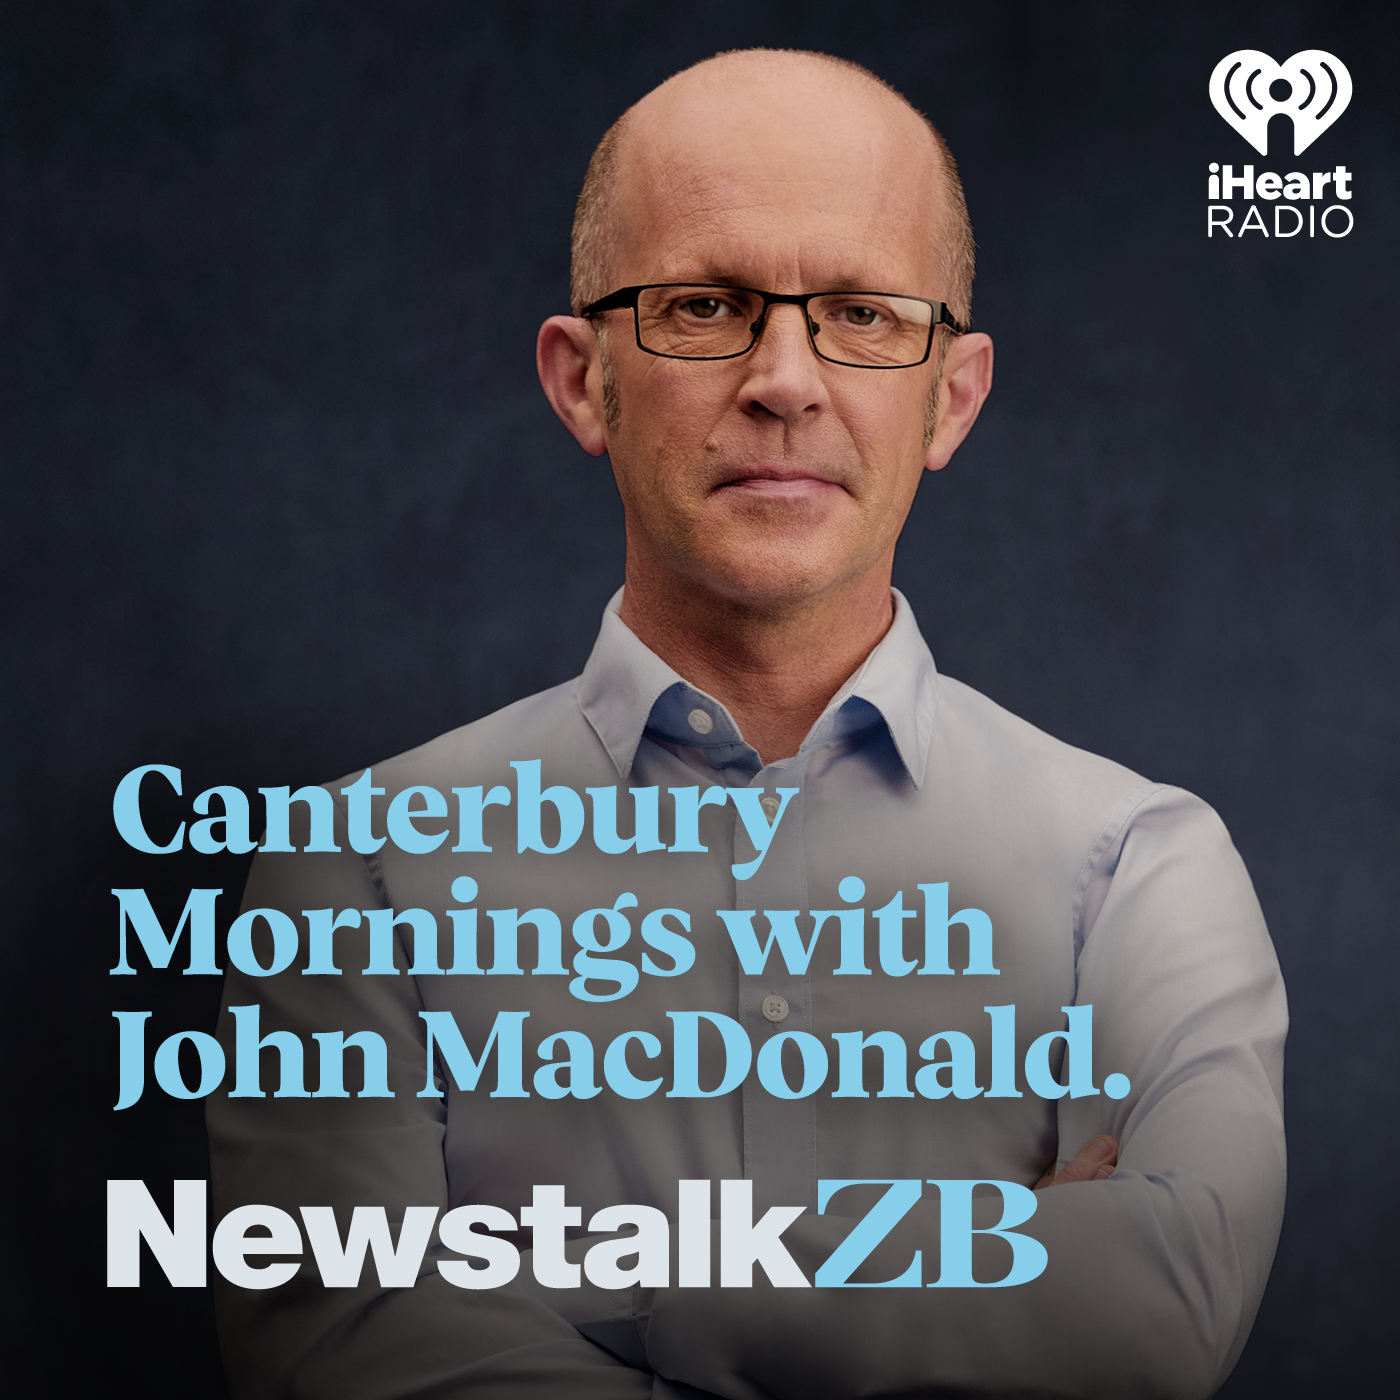 John MacDonald: Bonding medical graduates isn't realistic